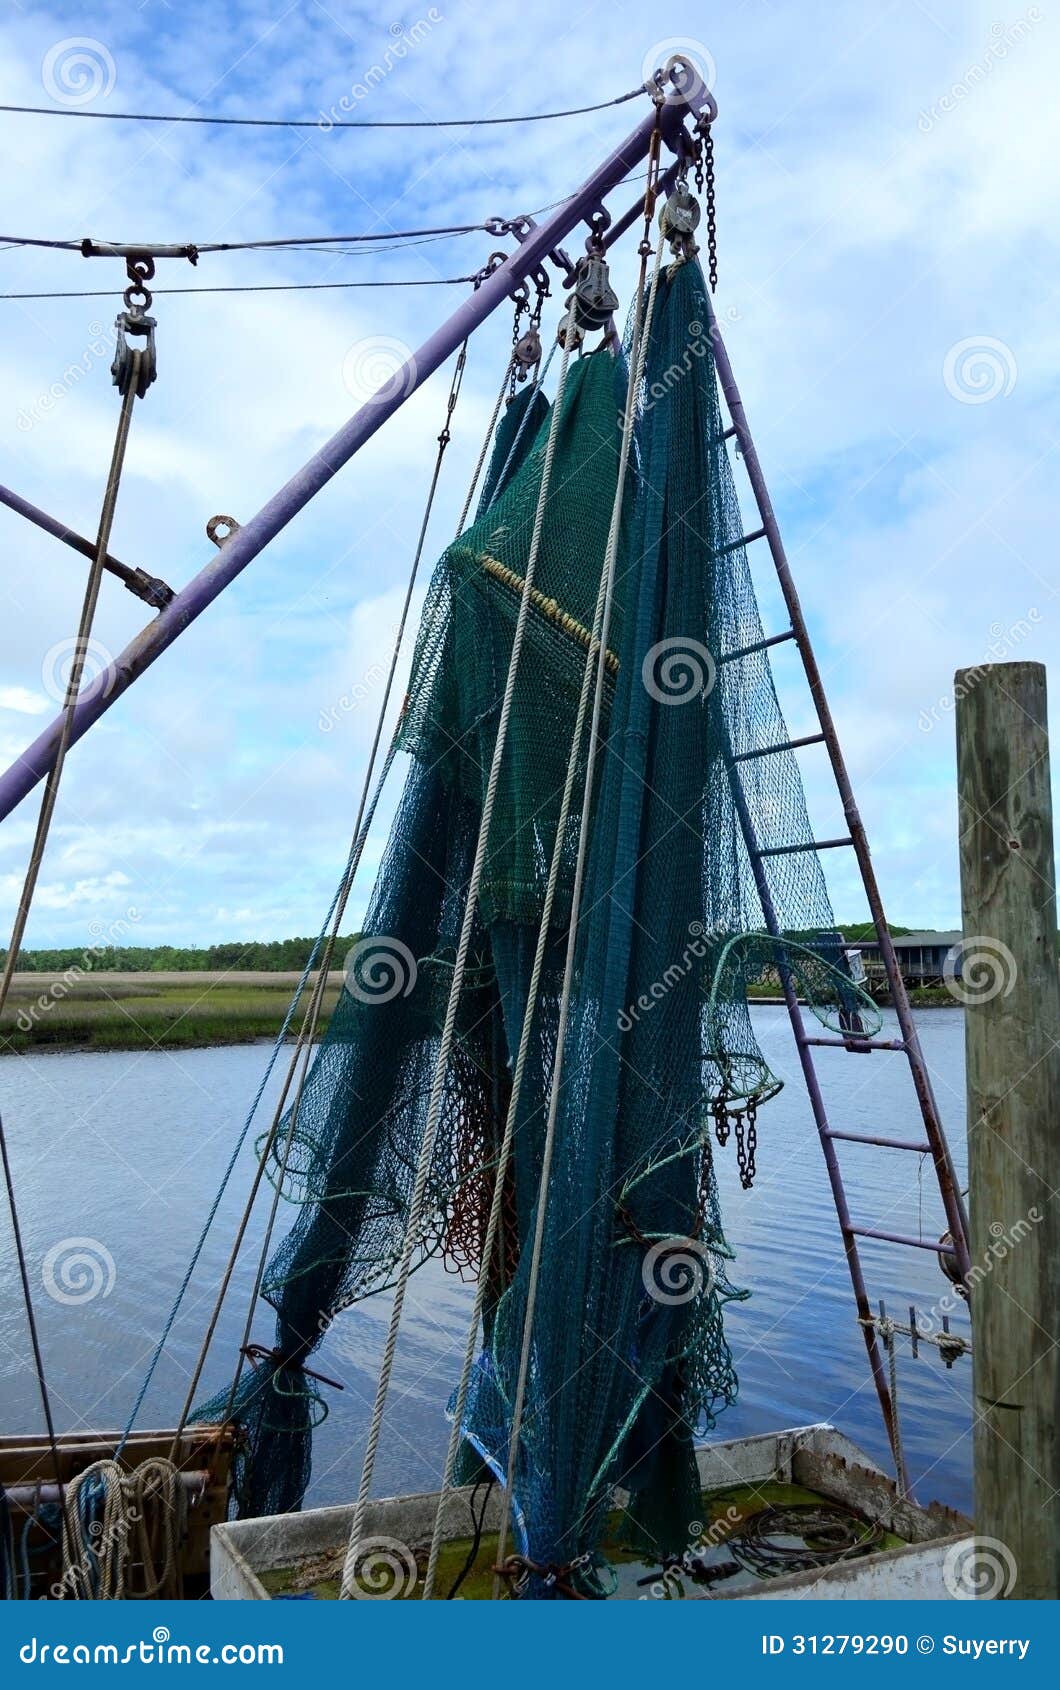 shrimp boat fish nets trawler stock photo - image of